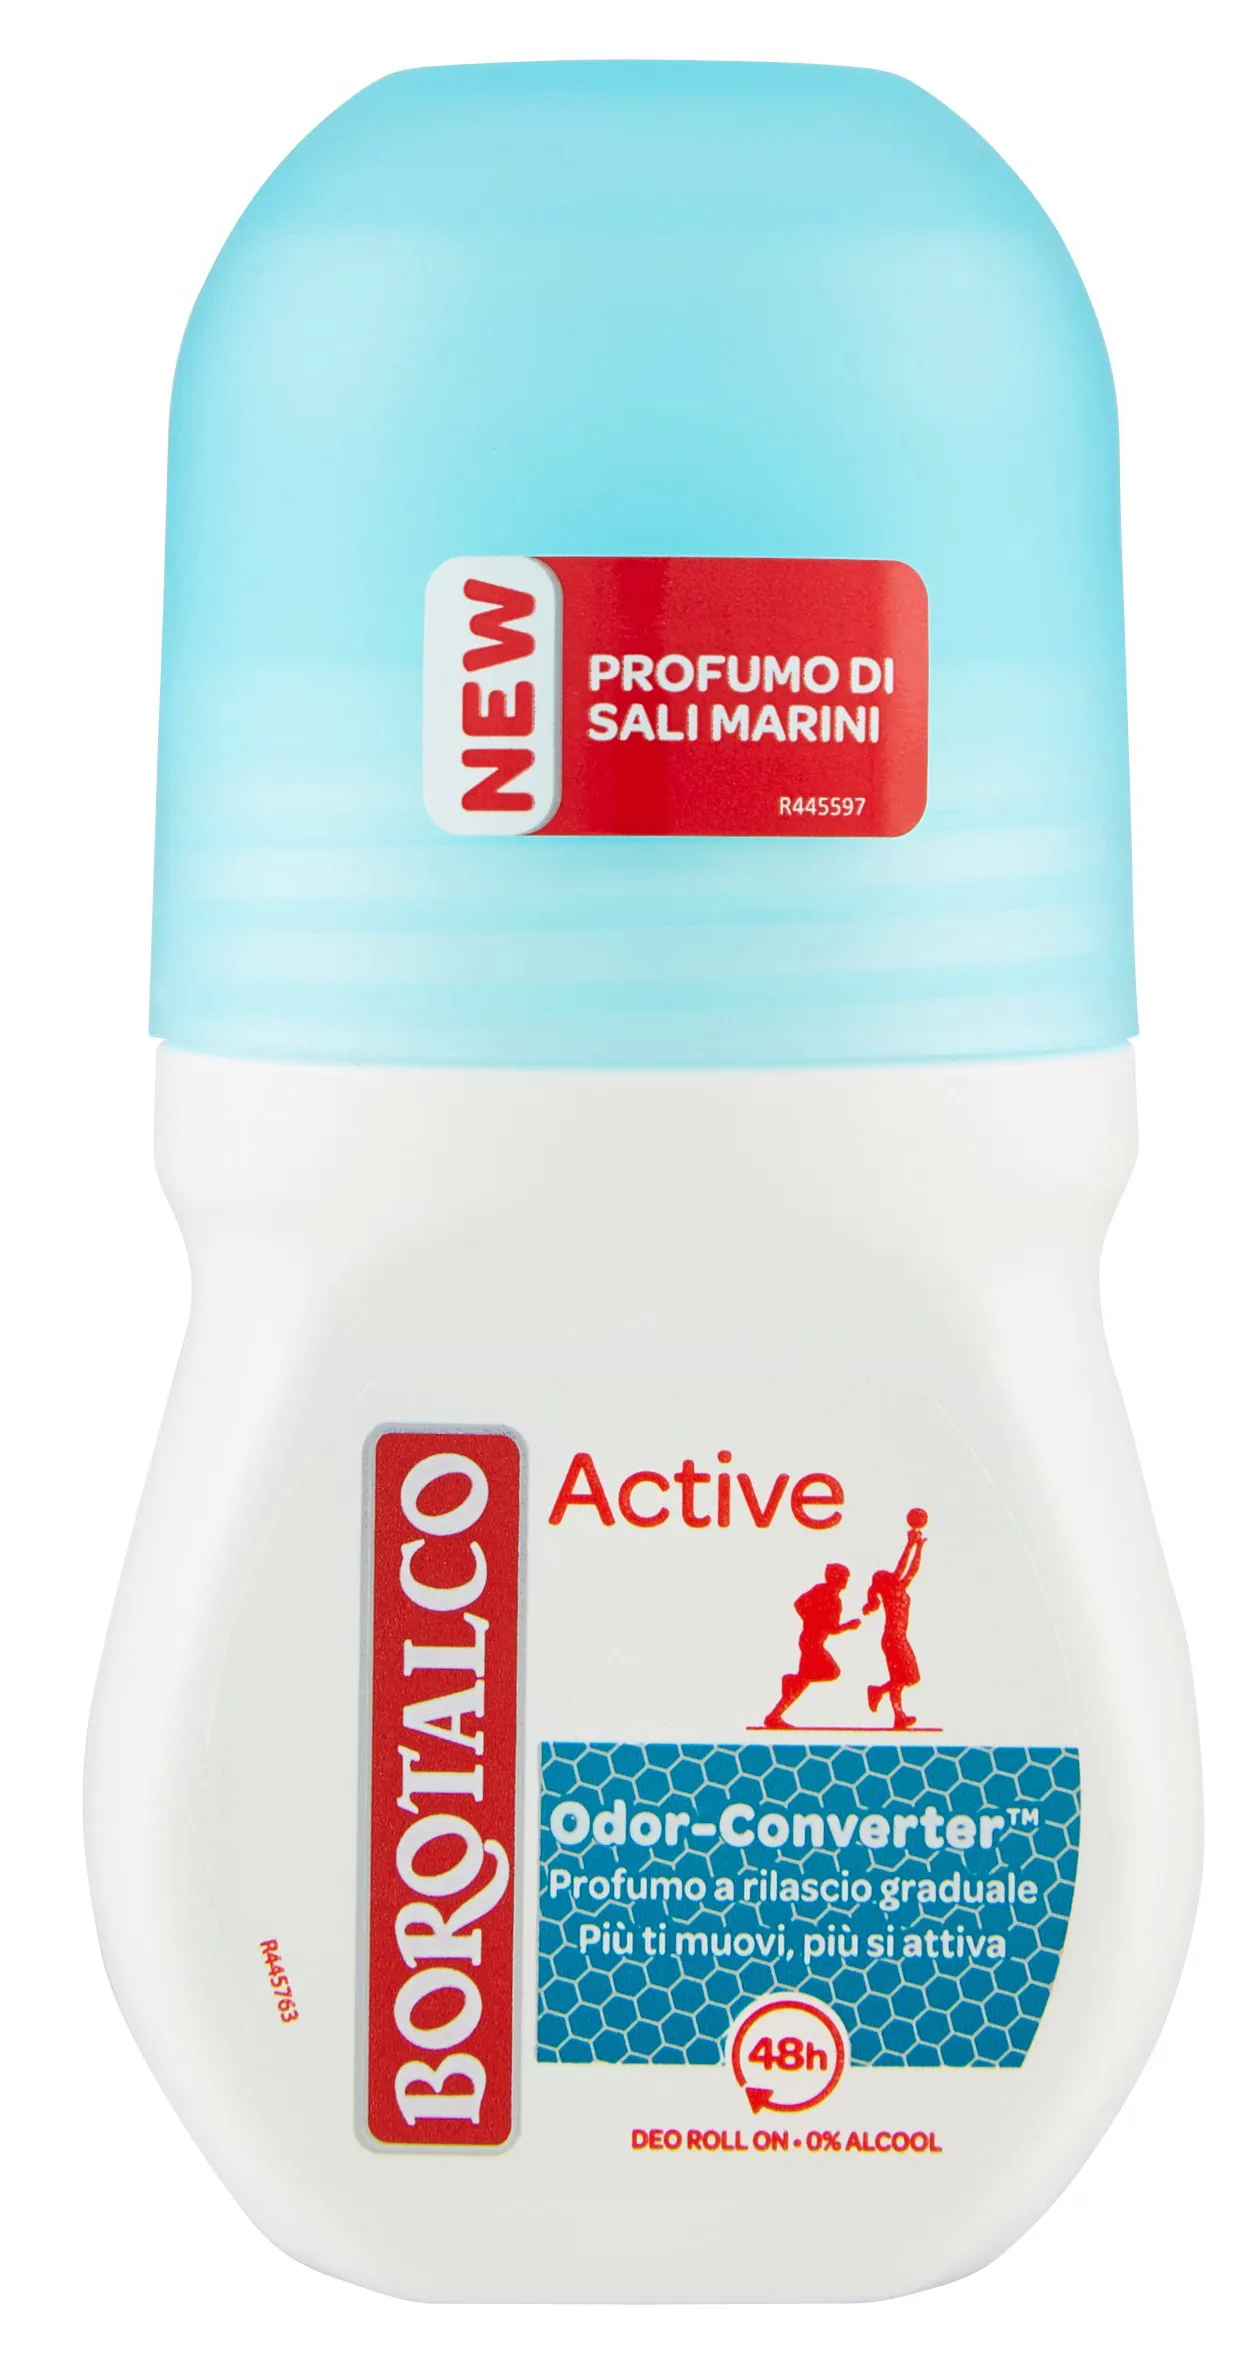 "BOROTALCO Deodorante roll-on active sali marini 50 ml prodotto per il corpo"